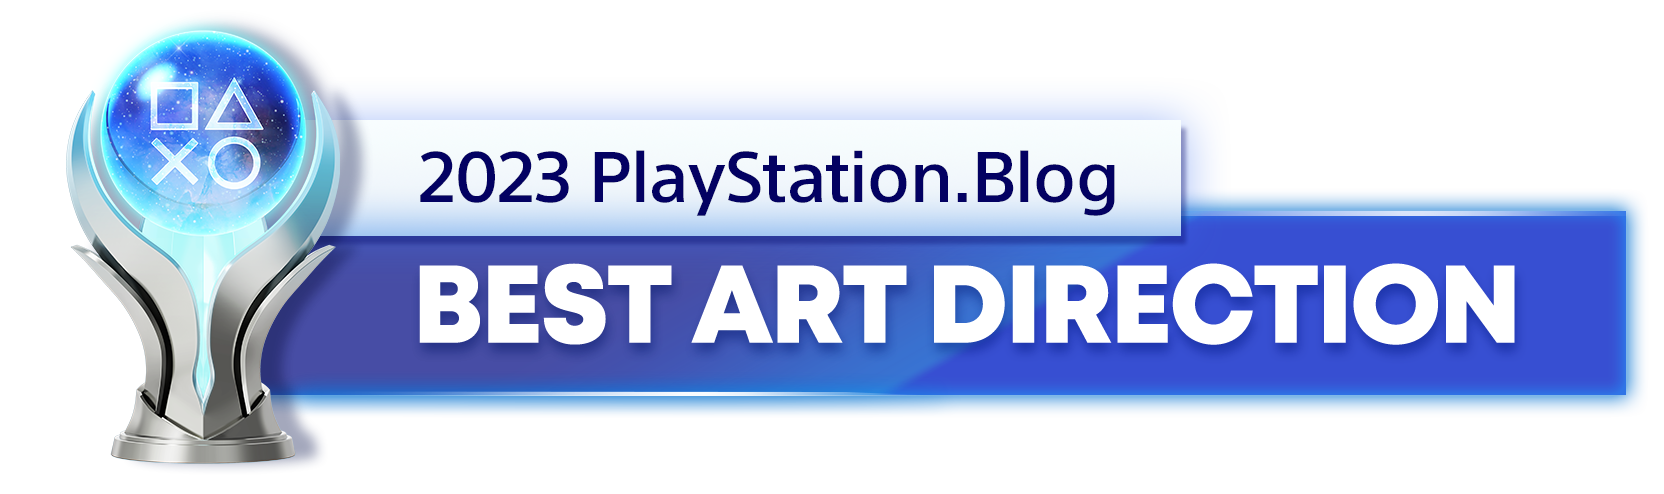  "Platinum Trophy for the 2023 PlayStation Blog Best Art Direction Winner"